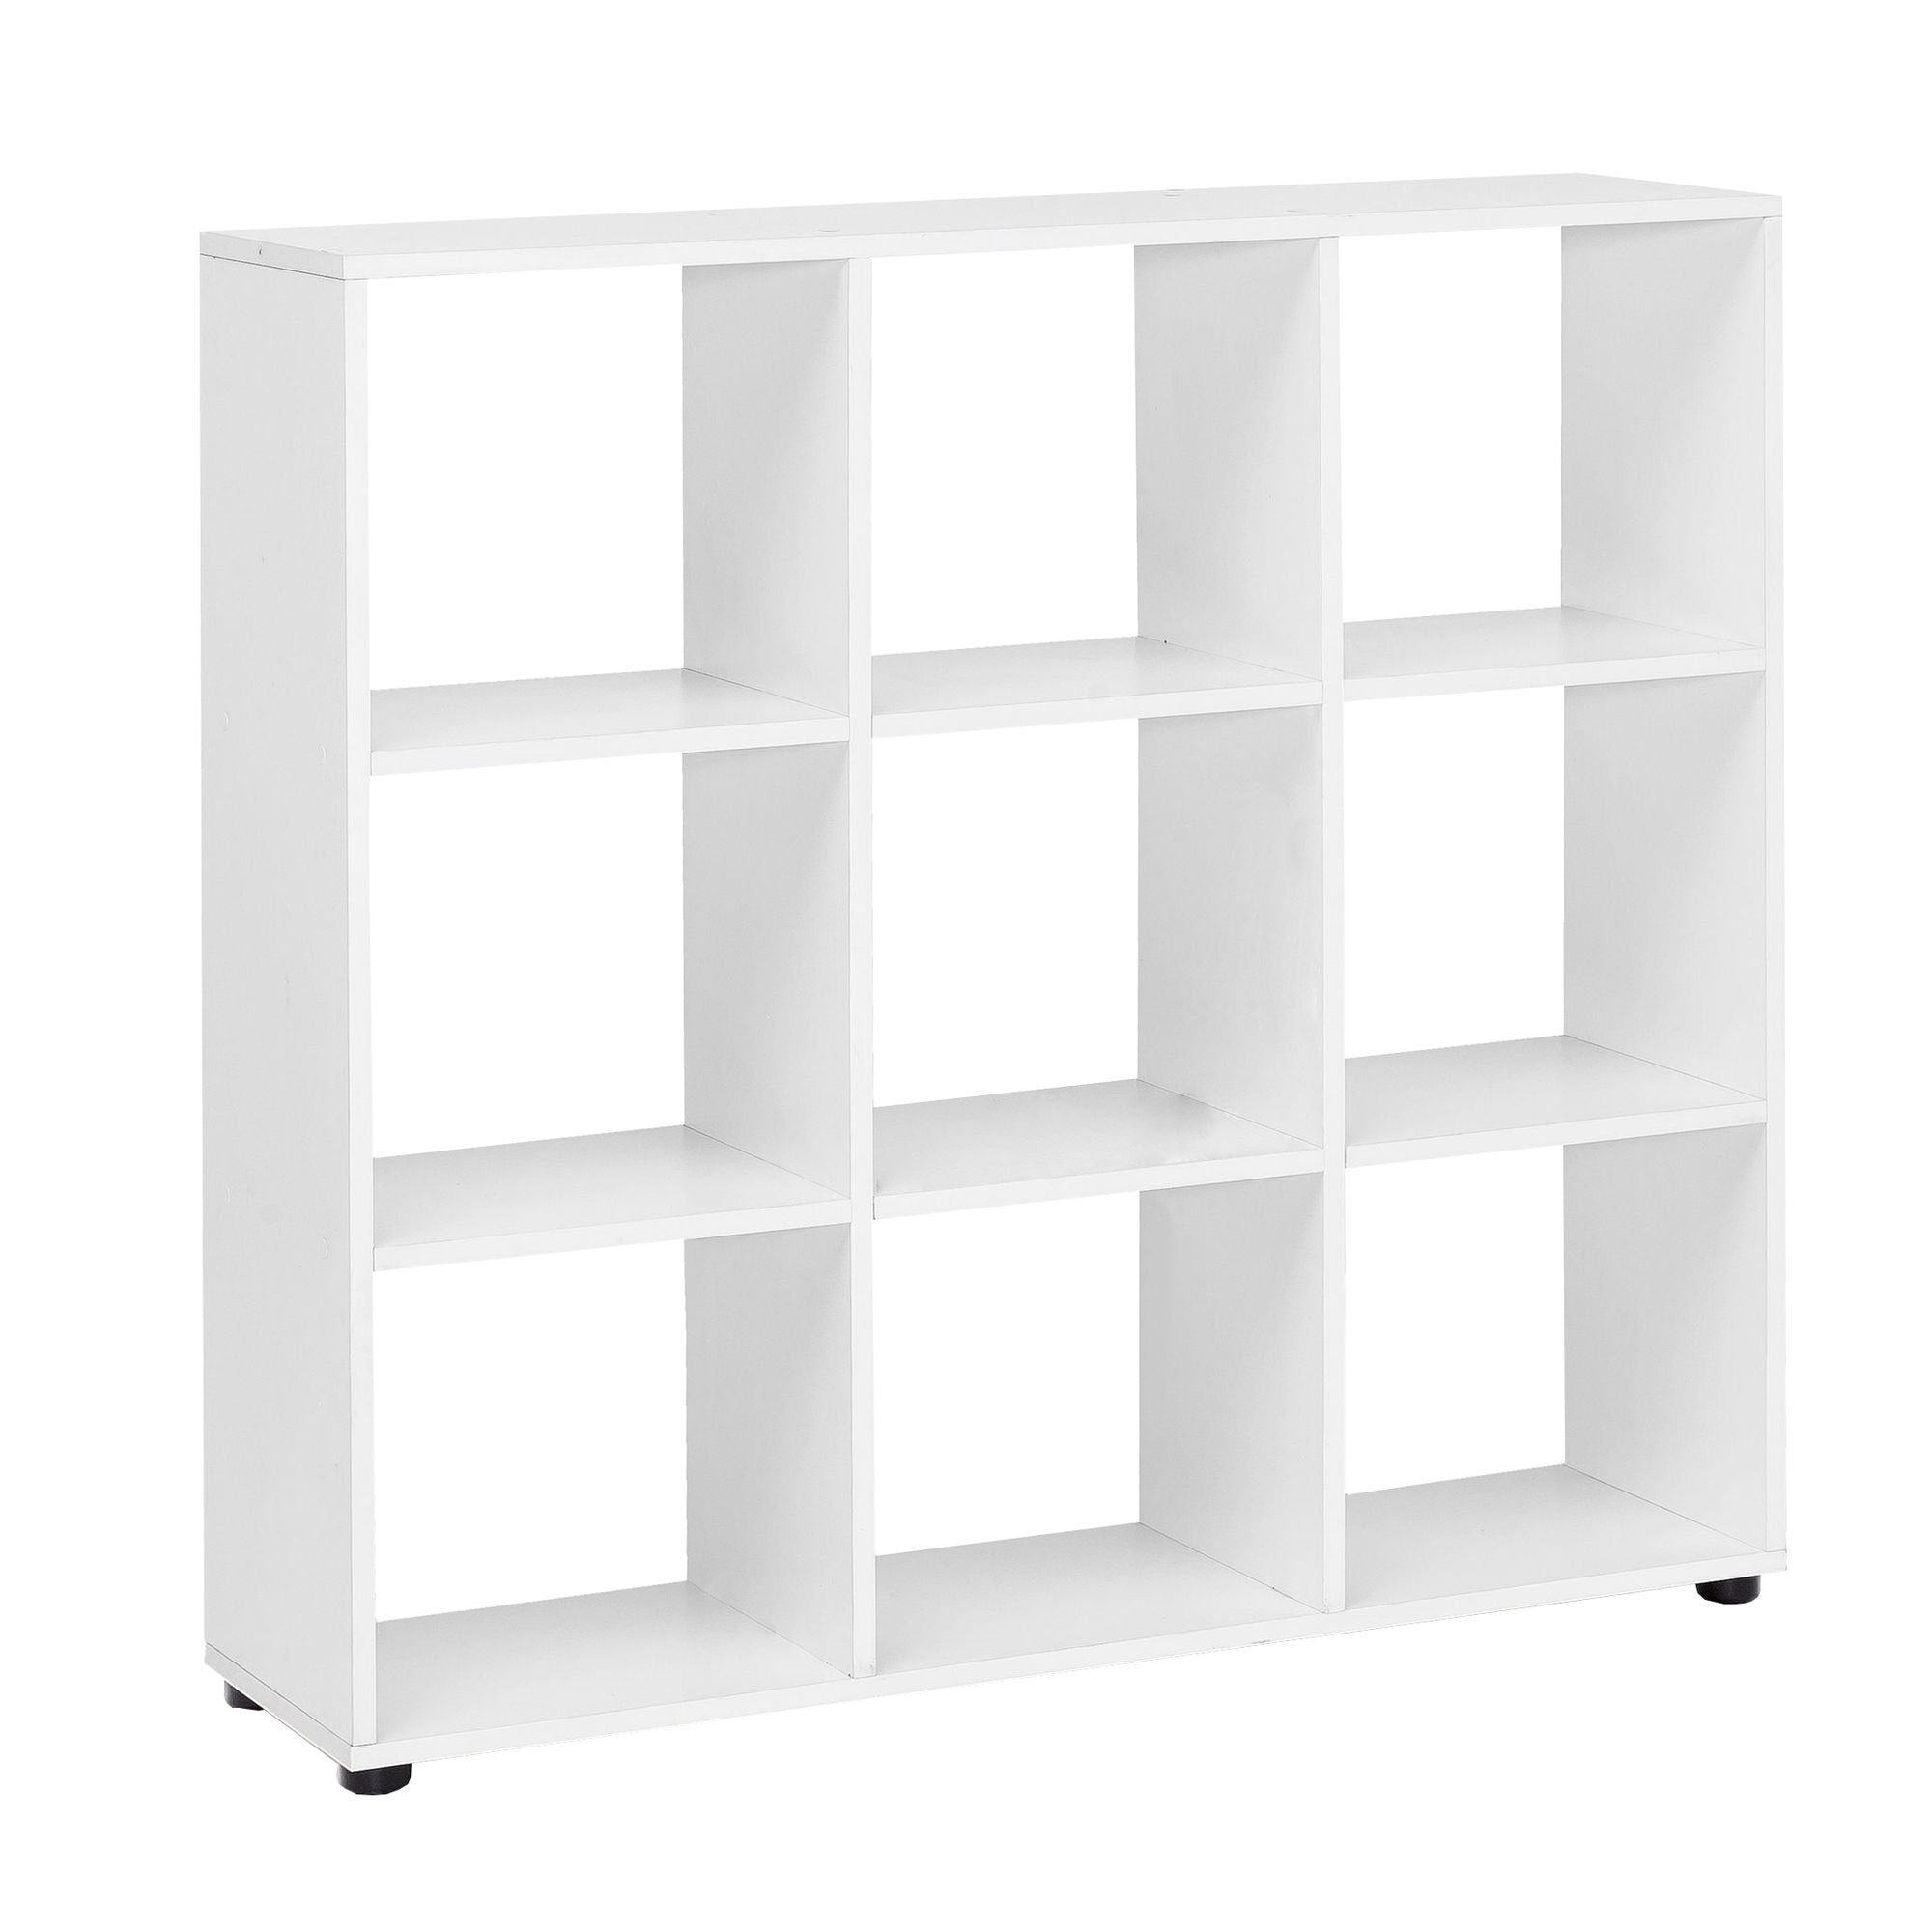 FINEBUY Standregal SuVa11686_1, mit 4 Fächern Weiß 108 x 104 x 29 cm, Bücherregal, Raumteiler Quadratisch, Würfelregal Modern